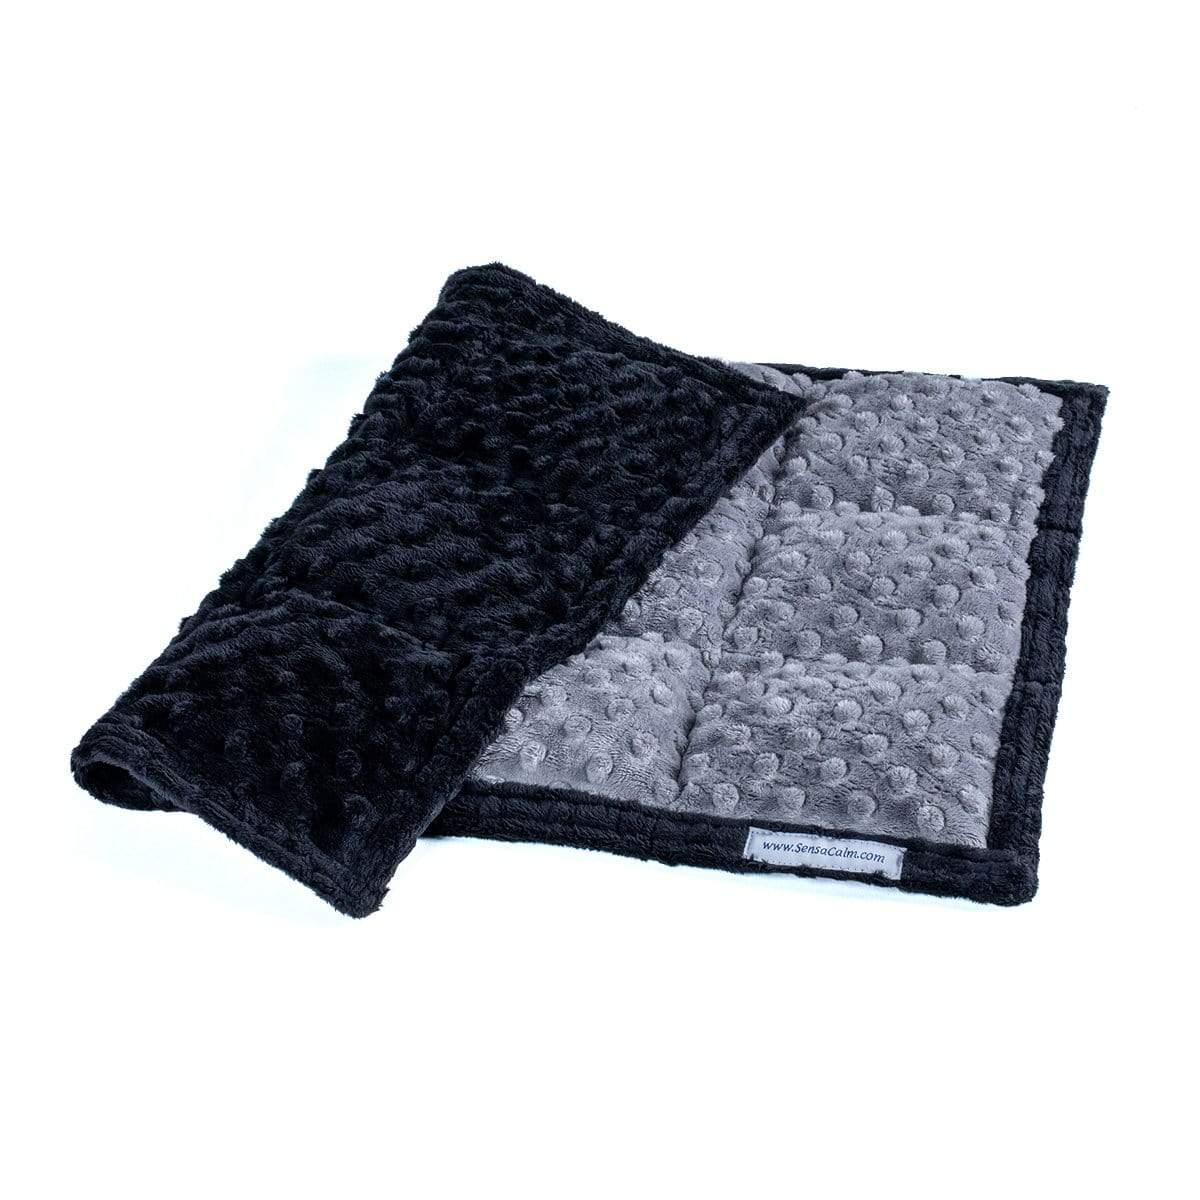 SensaCalm Lap Pads - 5 lb (18" W x 22" L) (Dimple Cuddle) Gray and Black